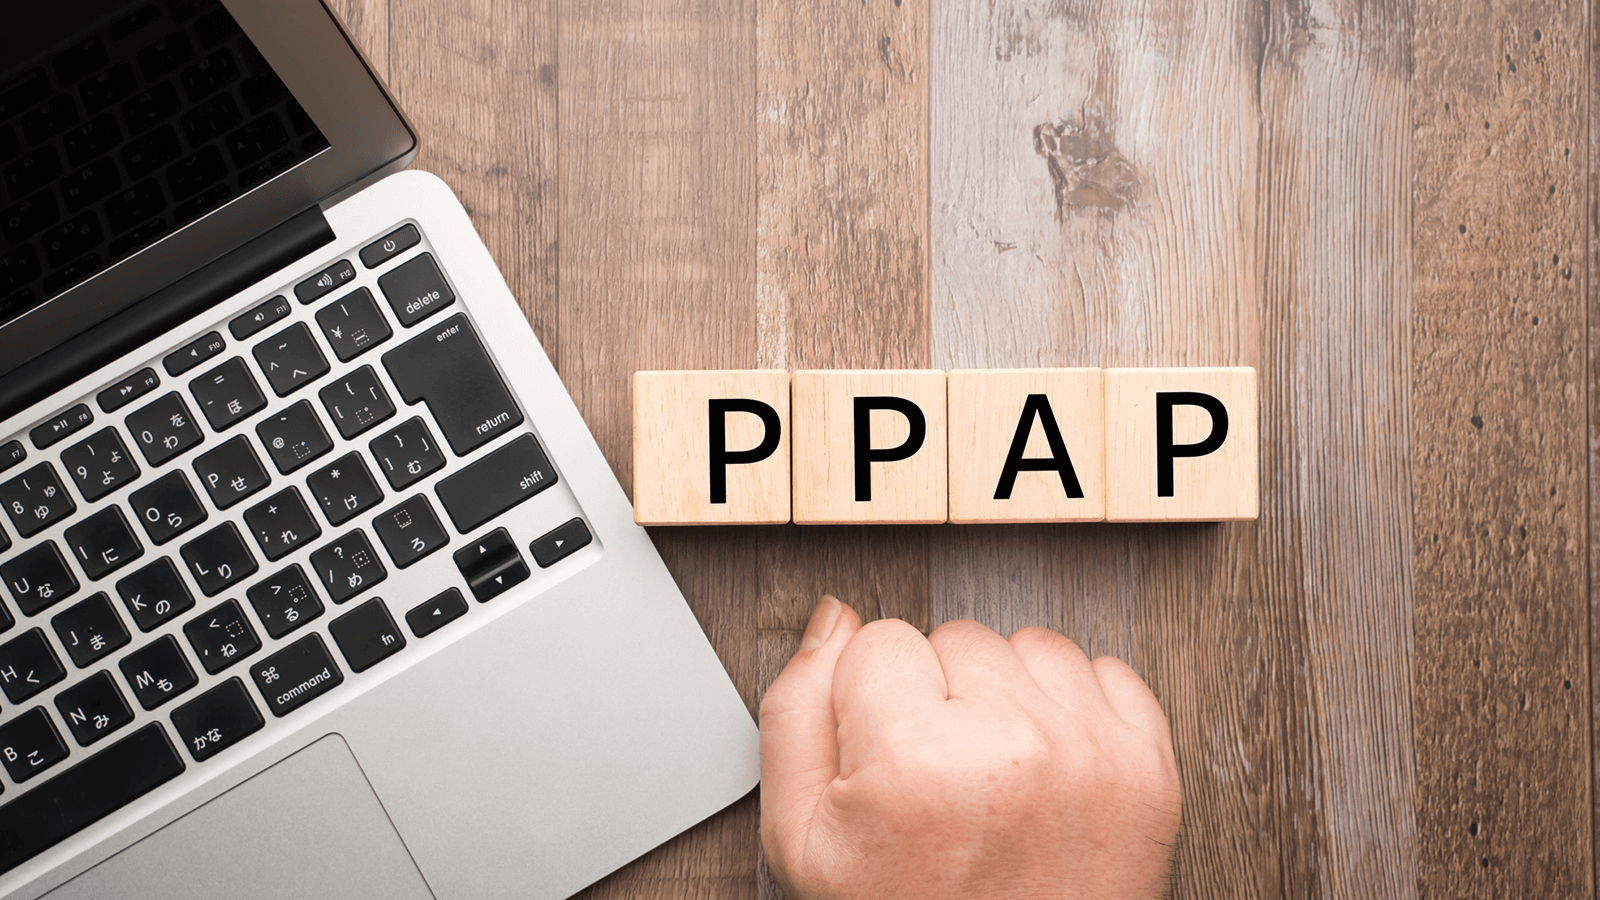 PPAPは安全性・生産性の両面からみてむしろ有害な慣習